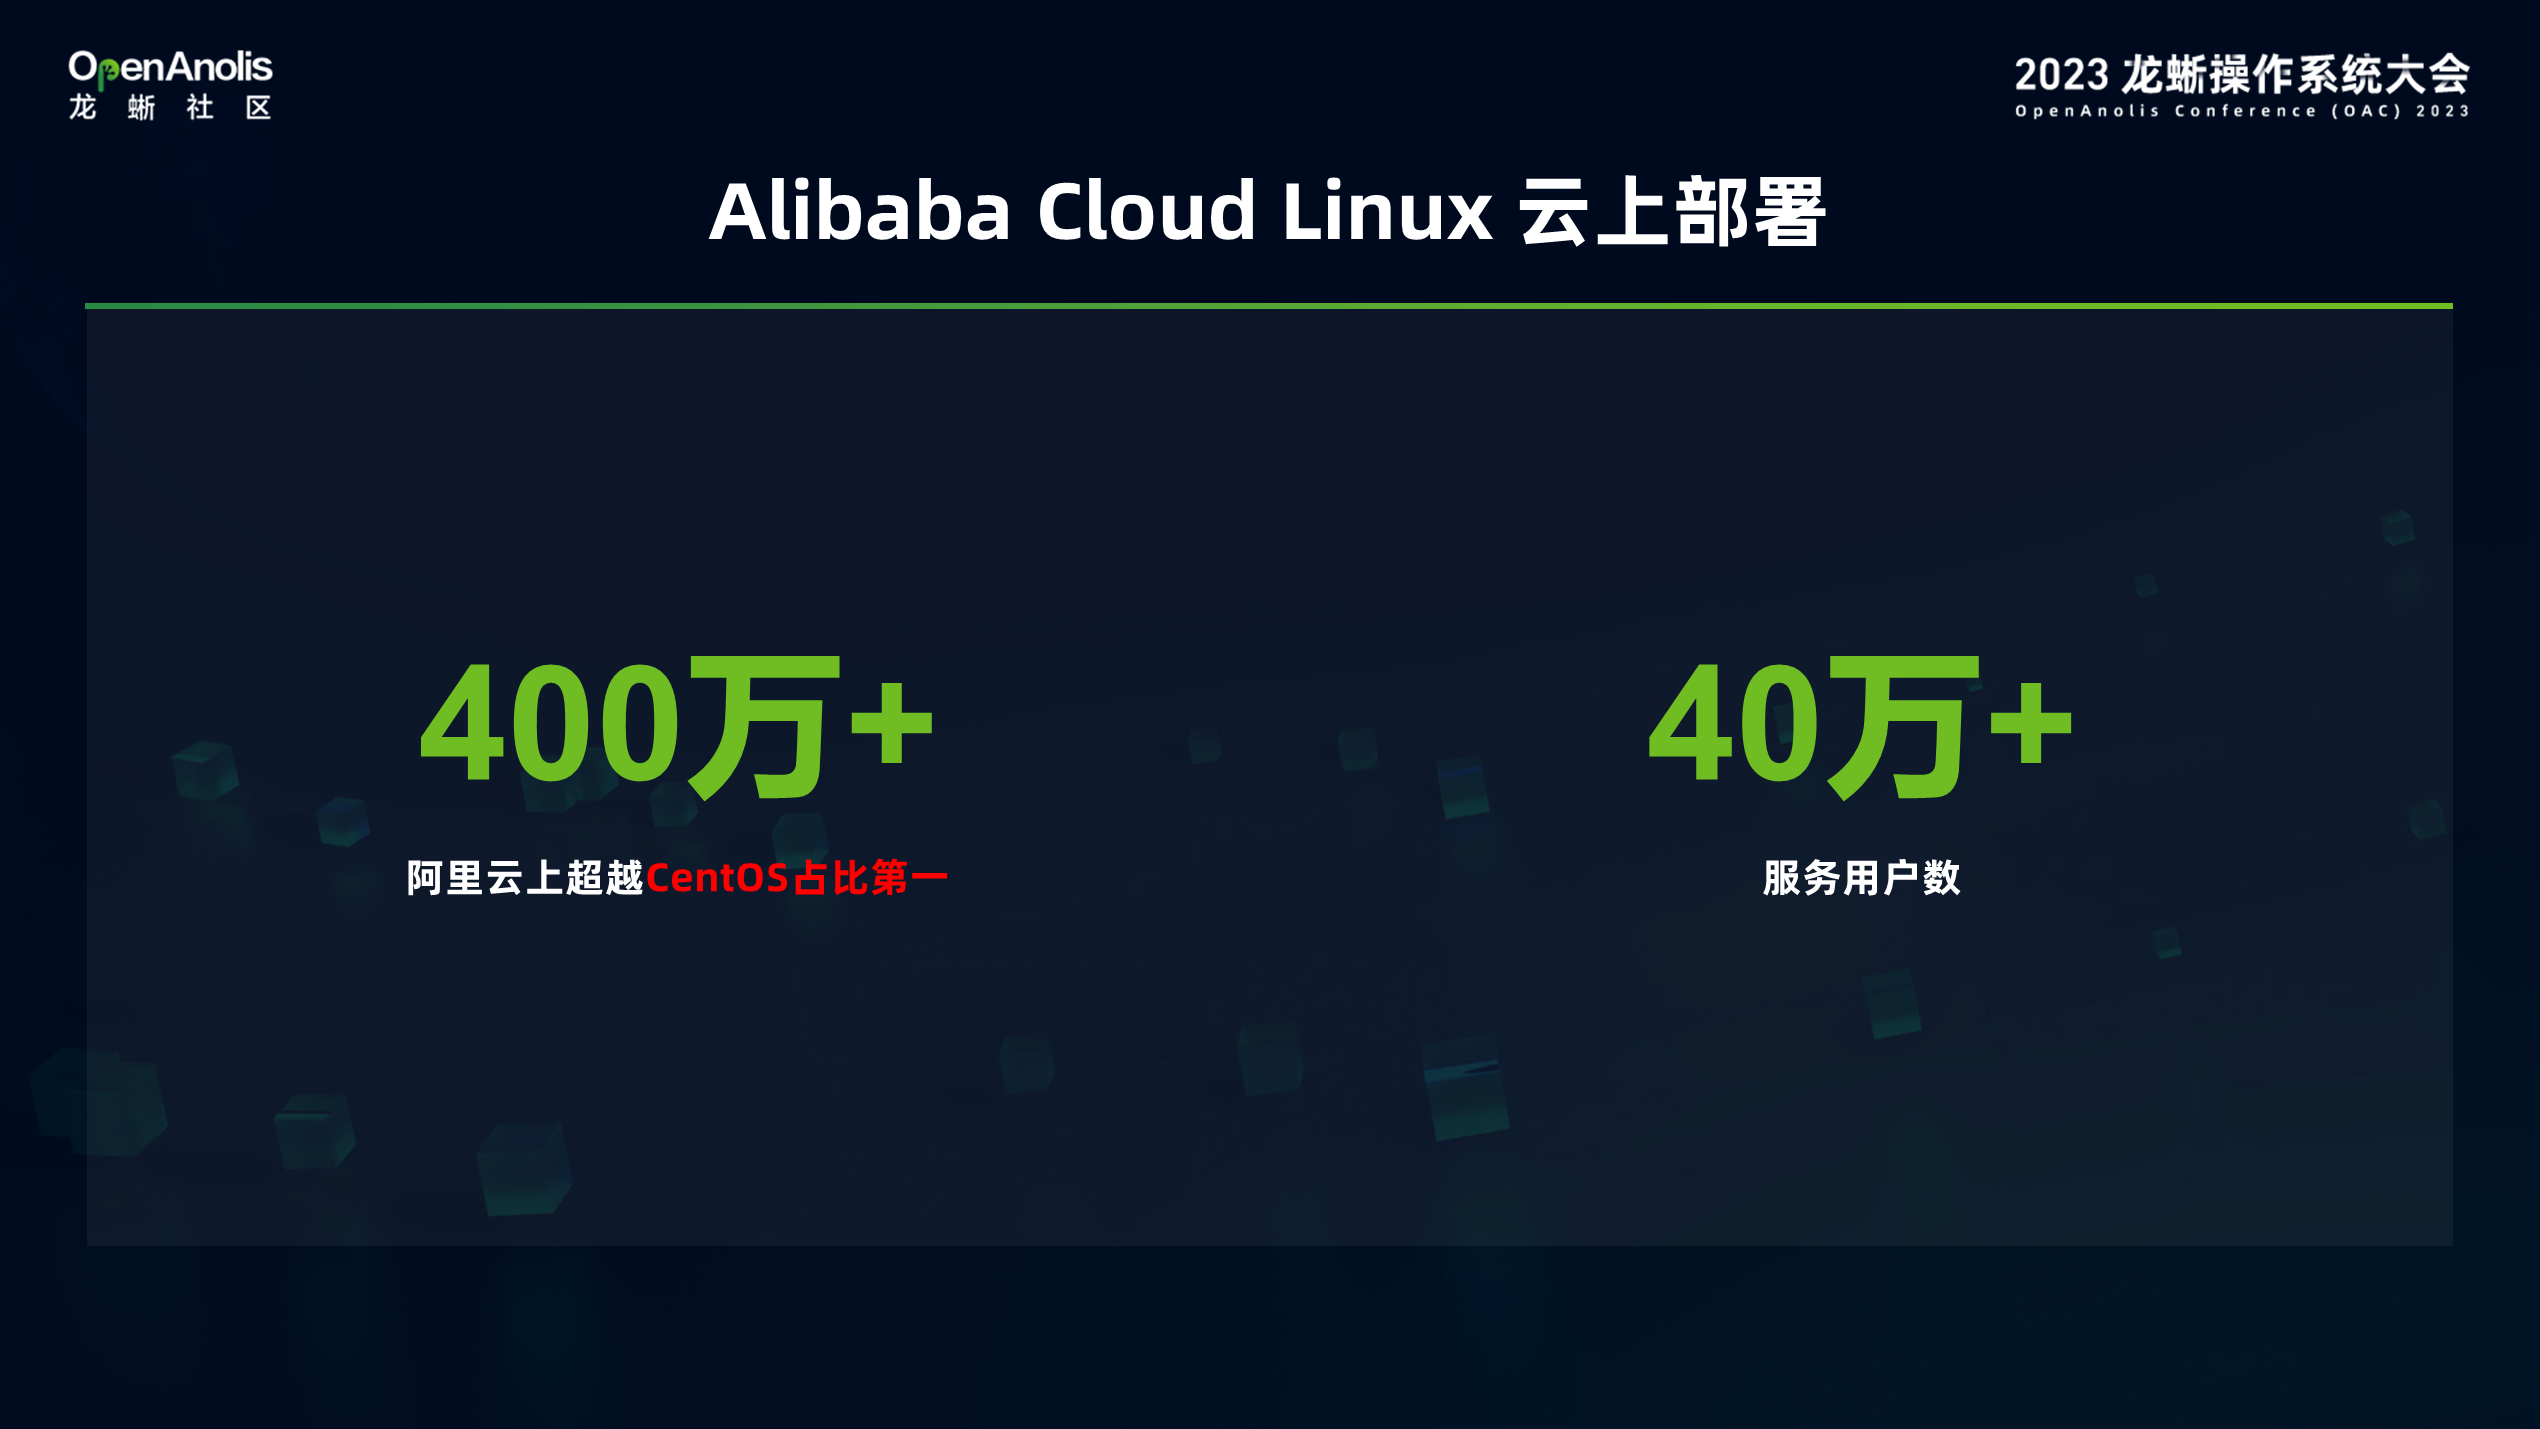 开箱即用的使用体验！Alibaba Cloud Linux 的演进之旅-鸿蒙开发者社区